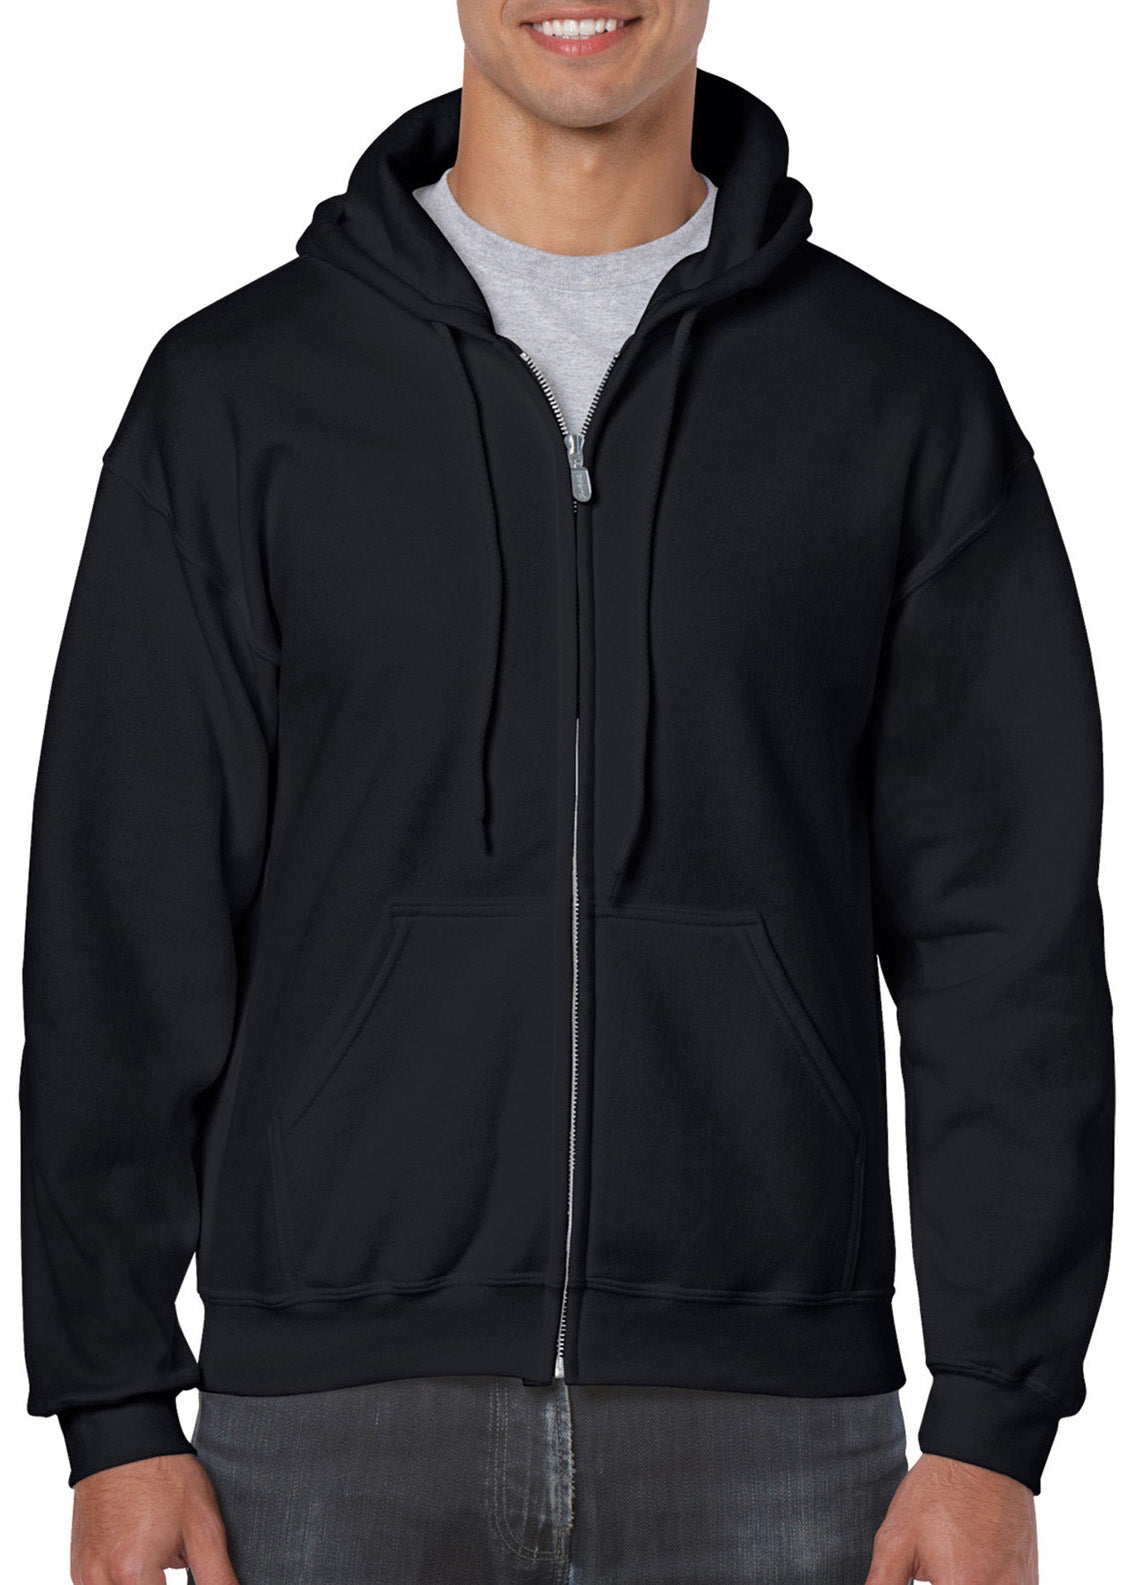 Gildan Unisex Heavy Blend Adult Full Zip Sweatshirt